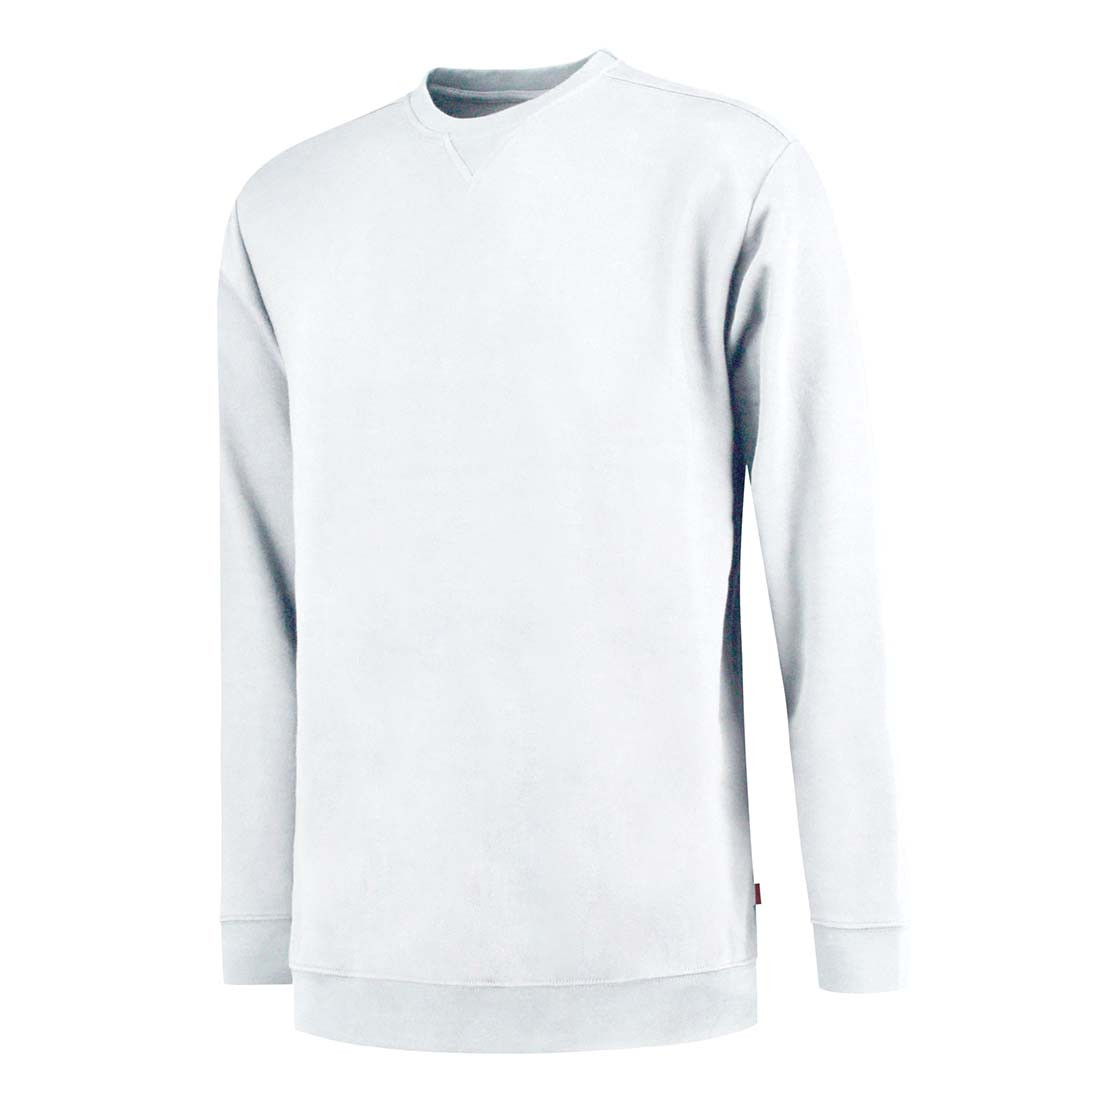 Unisex Sweatshirt - Safetywear